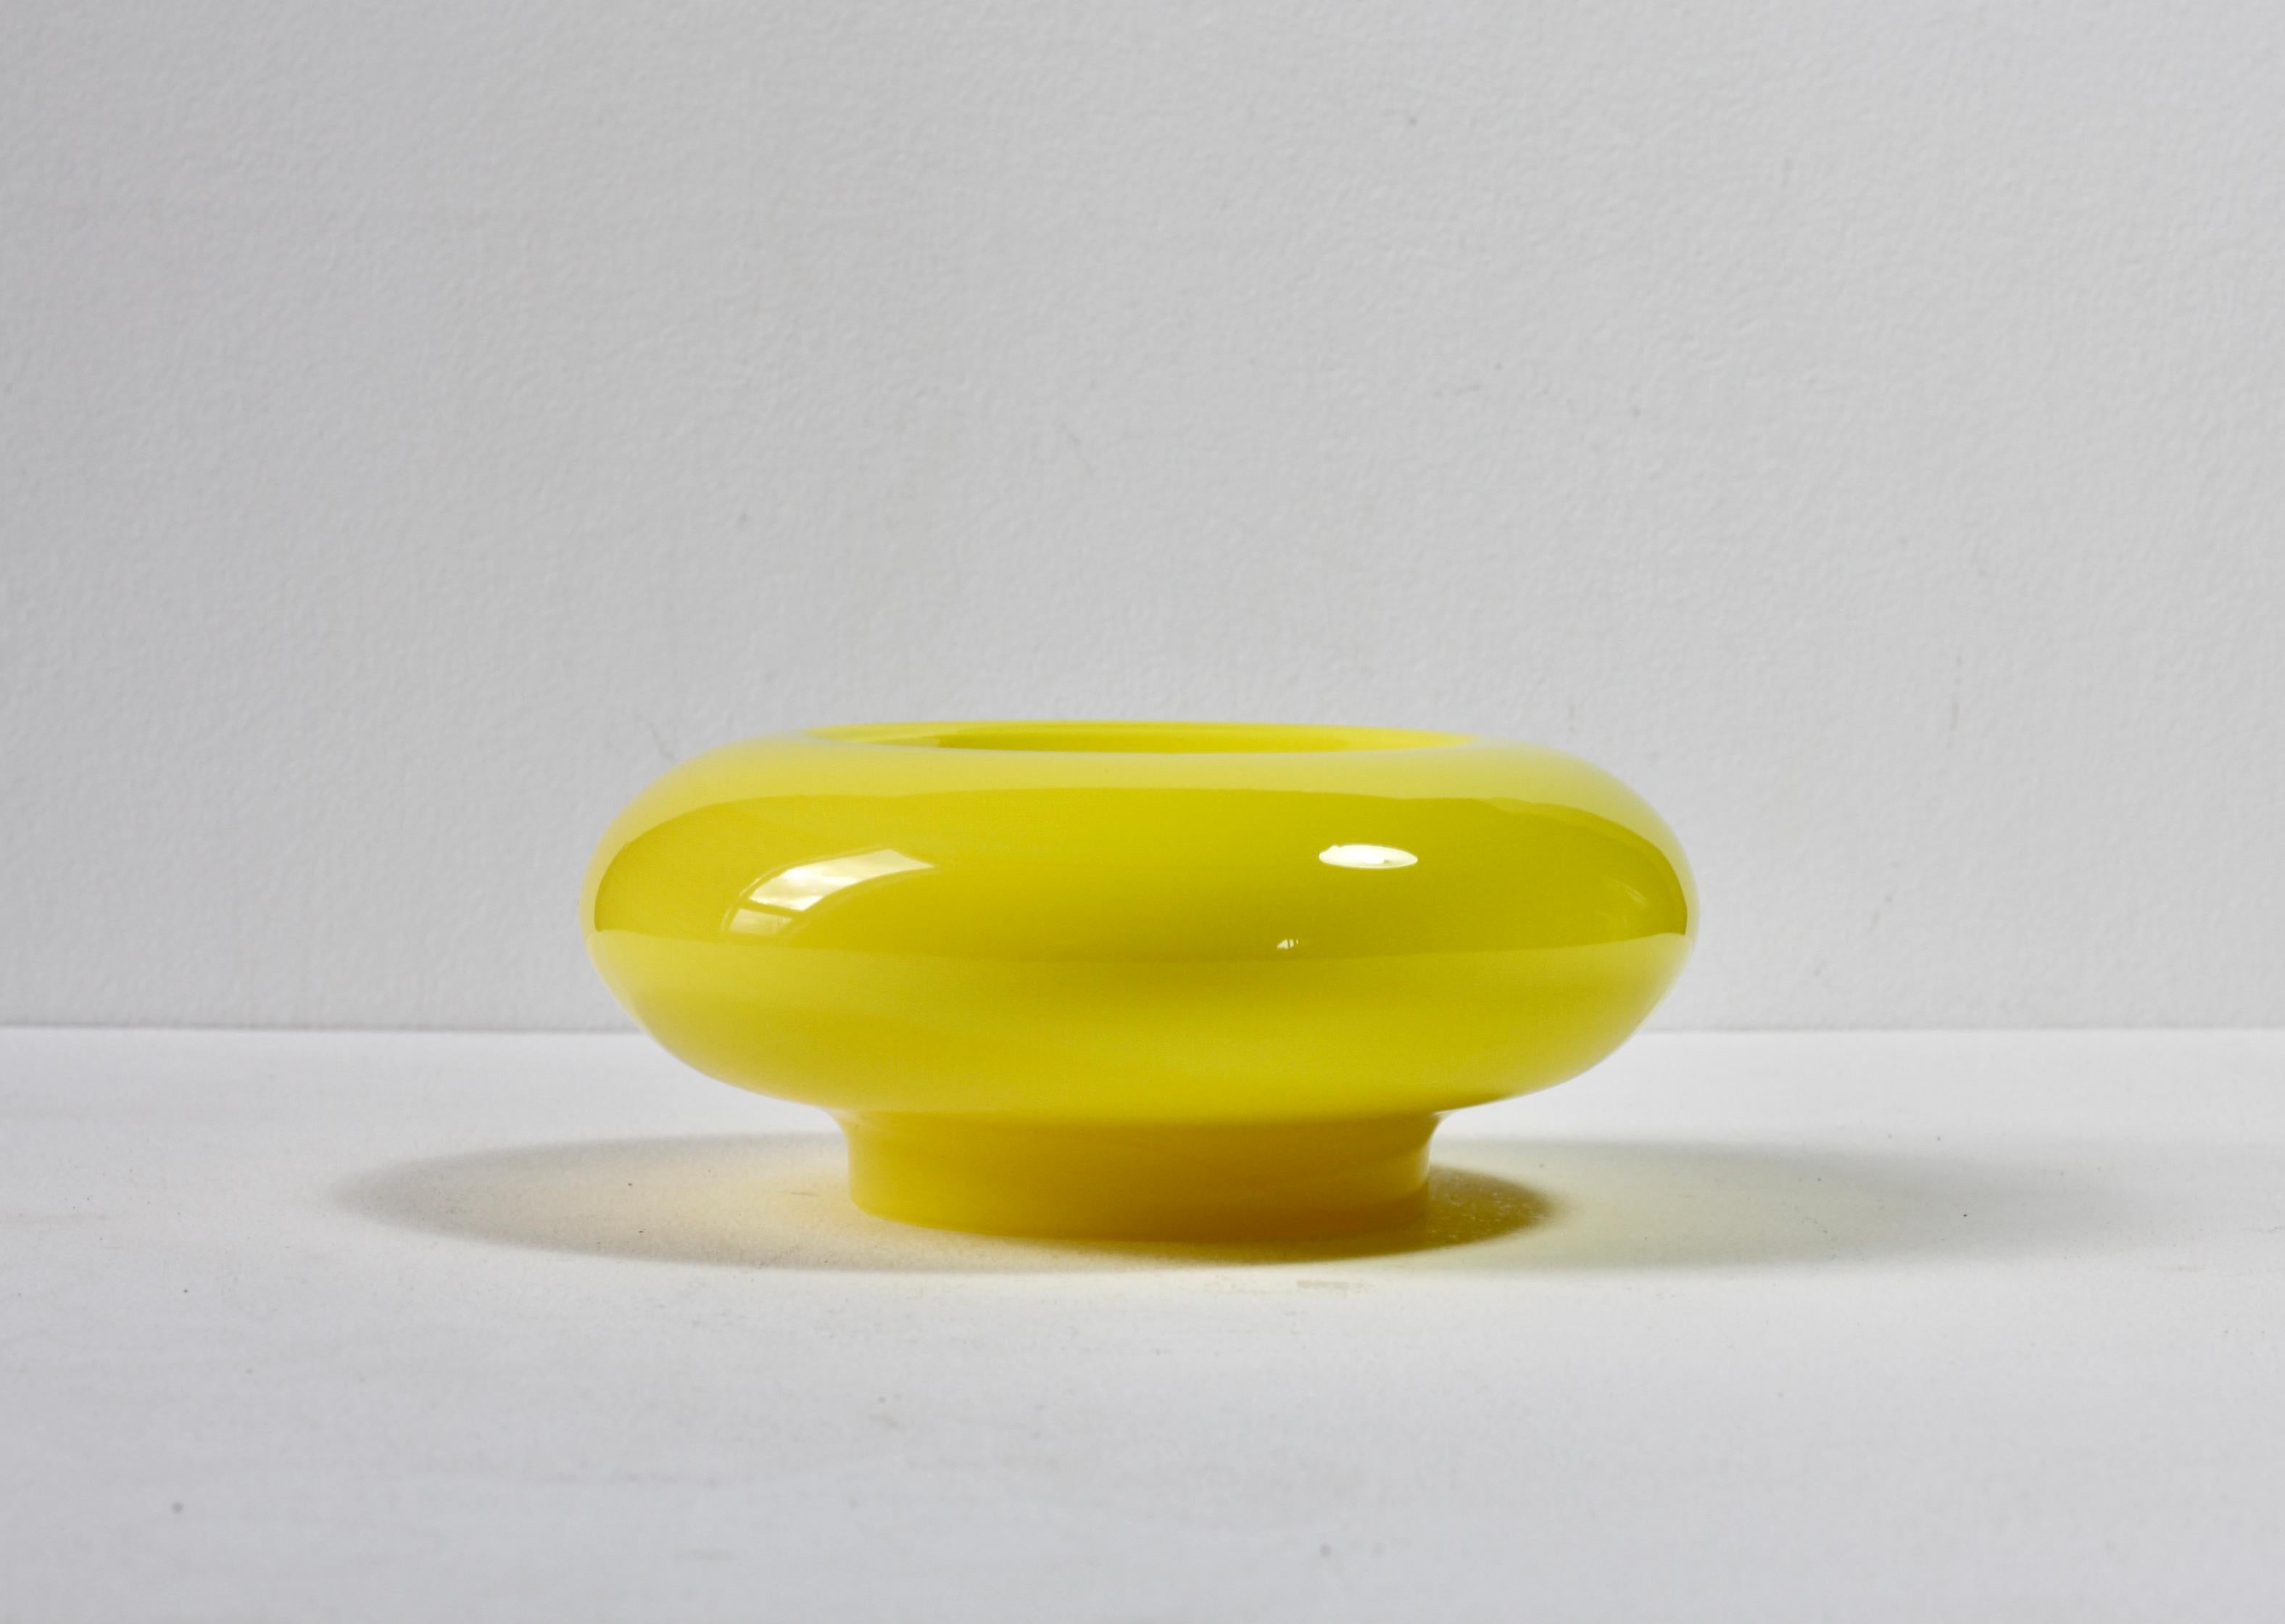 Merveilleux bol ou vase en verre jaune attribué à Ermanno Nason pour Cenedese de Murano, Italie. Le jaune est l'une des couleurs les plus difficiles à produire et donc à trouver.

Can peut être utilisé comme bol, plat, vide-poche, cendrier ou comme